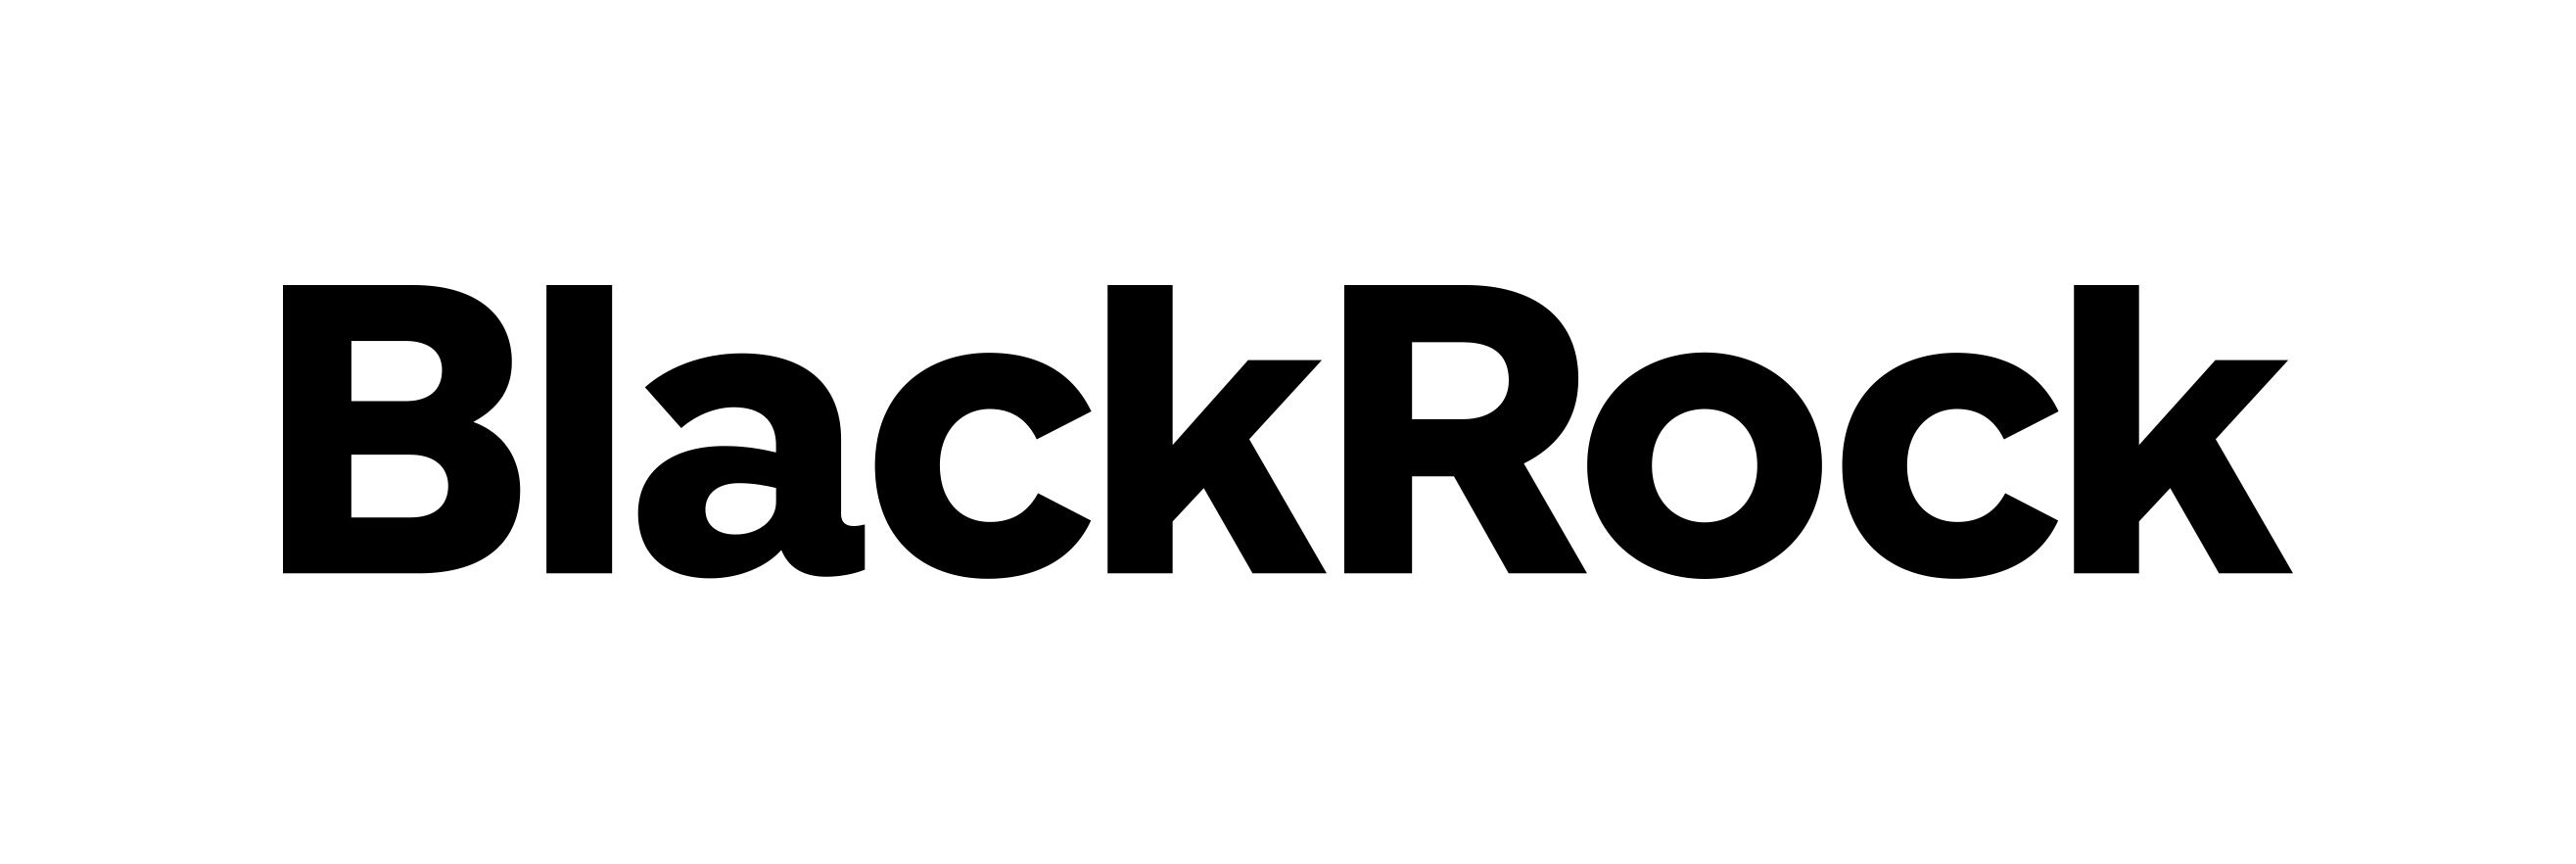 BlackRock Investment Management Fonds Produkte In Zeichnung News